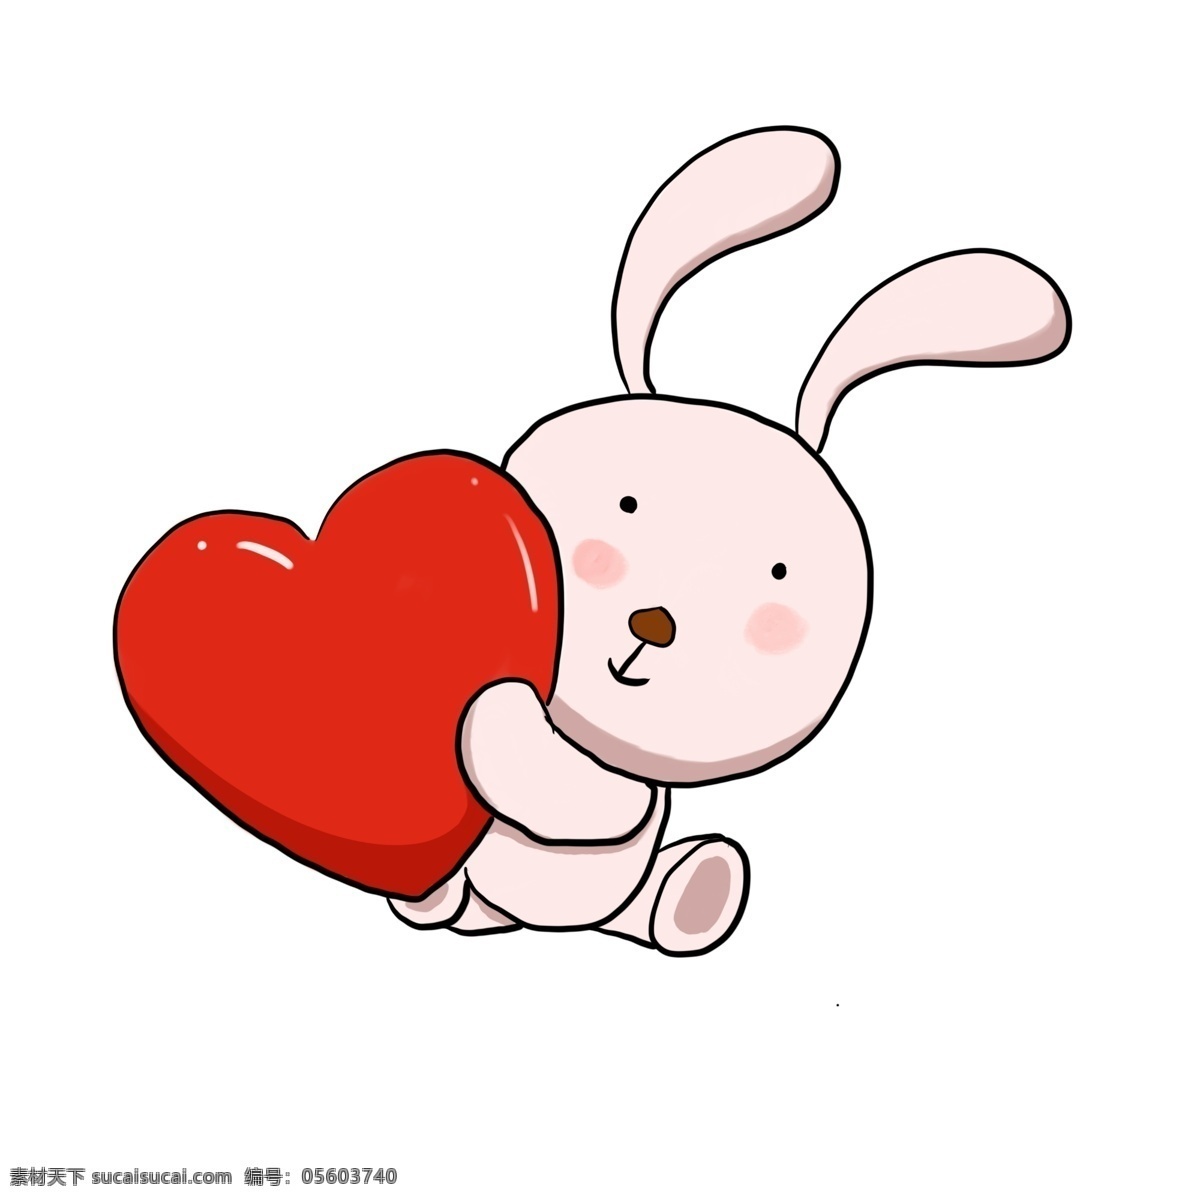 爱心 抱 兔子 红色的爱心 可爱的兔子 心形 卡通爱心 卡通小兔子 粉色的小兔子 立体爱心